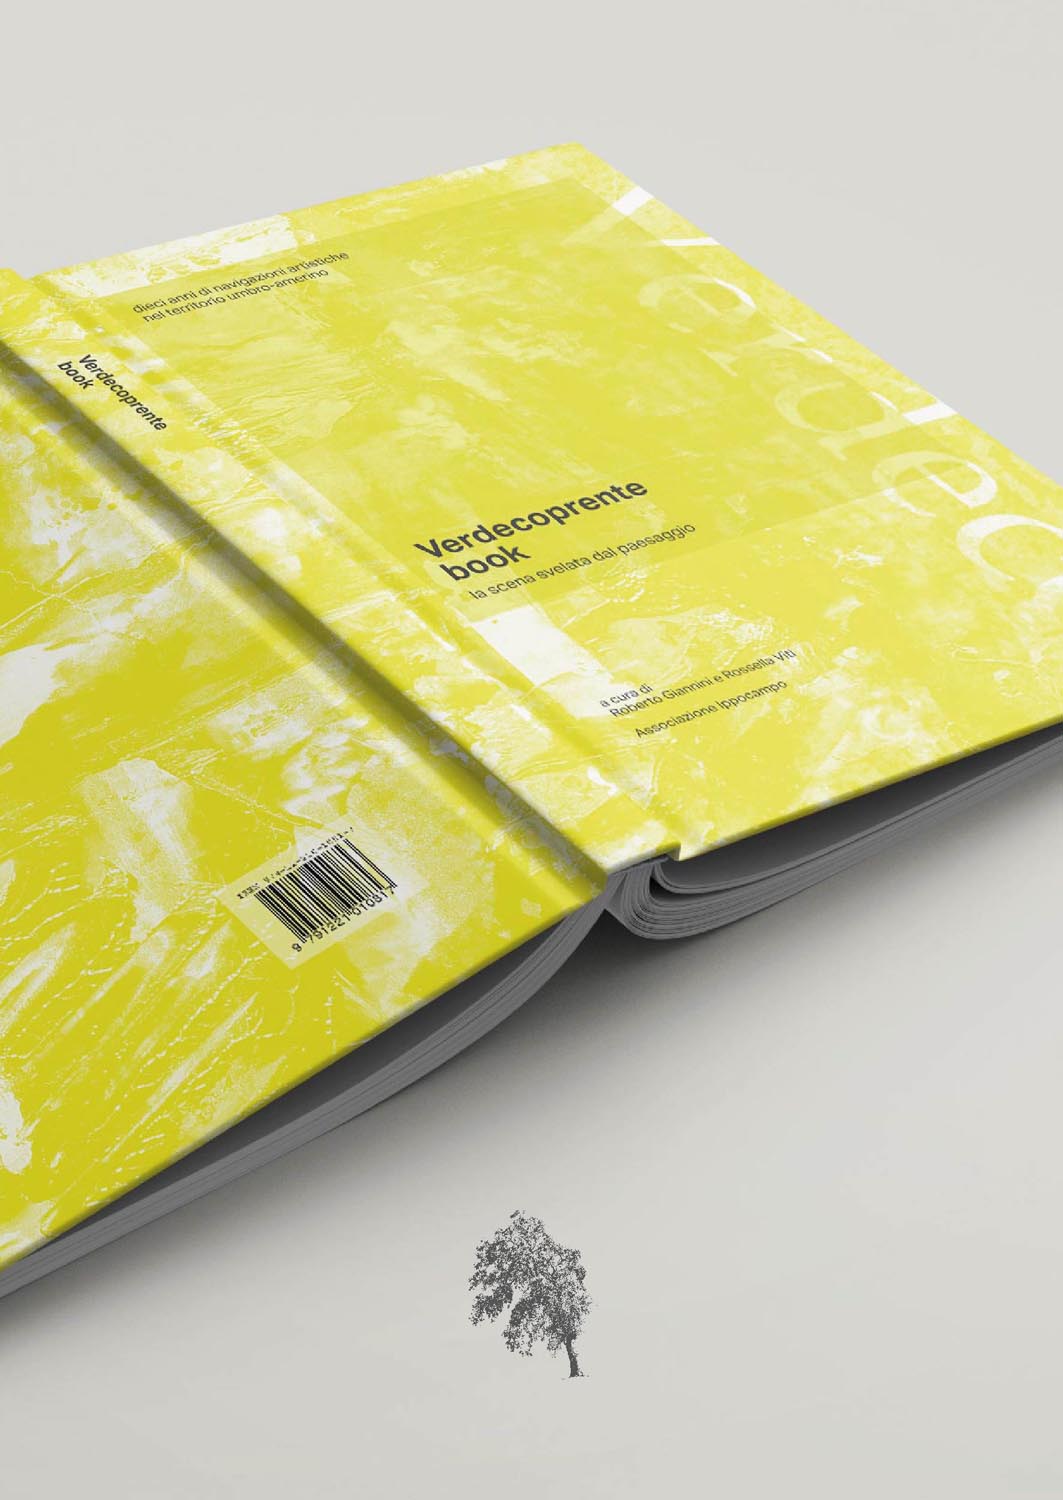 Progetto grafico editoriale - Verdecoprente book - La scena svelata del paesaggio